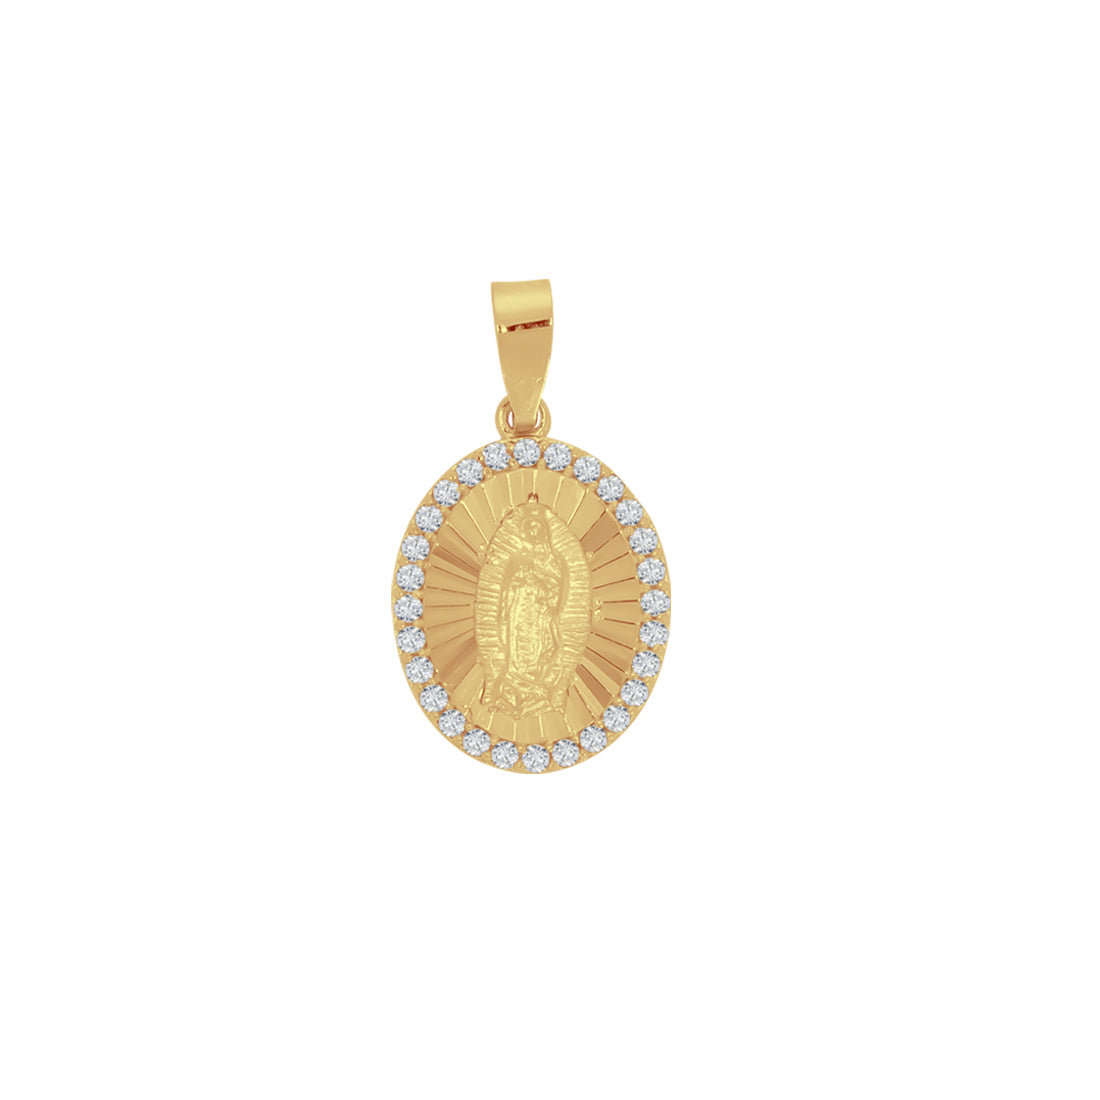 Medalla Oro 14k - Virgen de Guadalupe con Zirconias